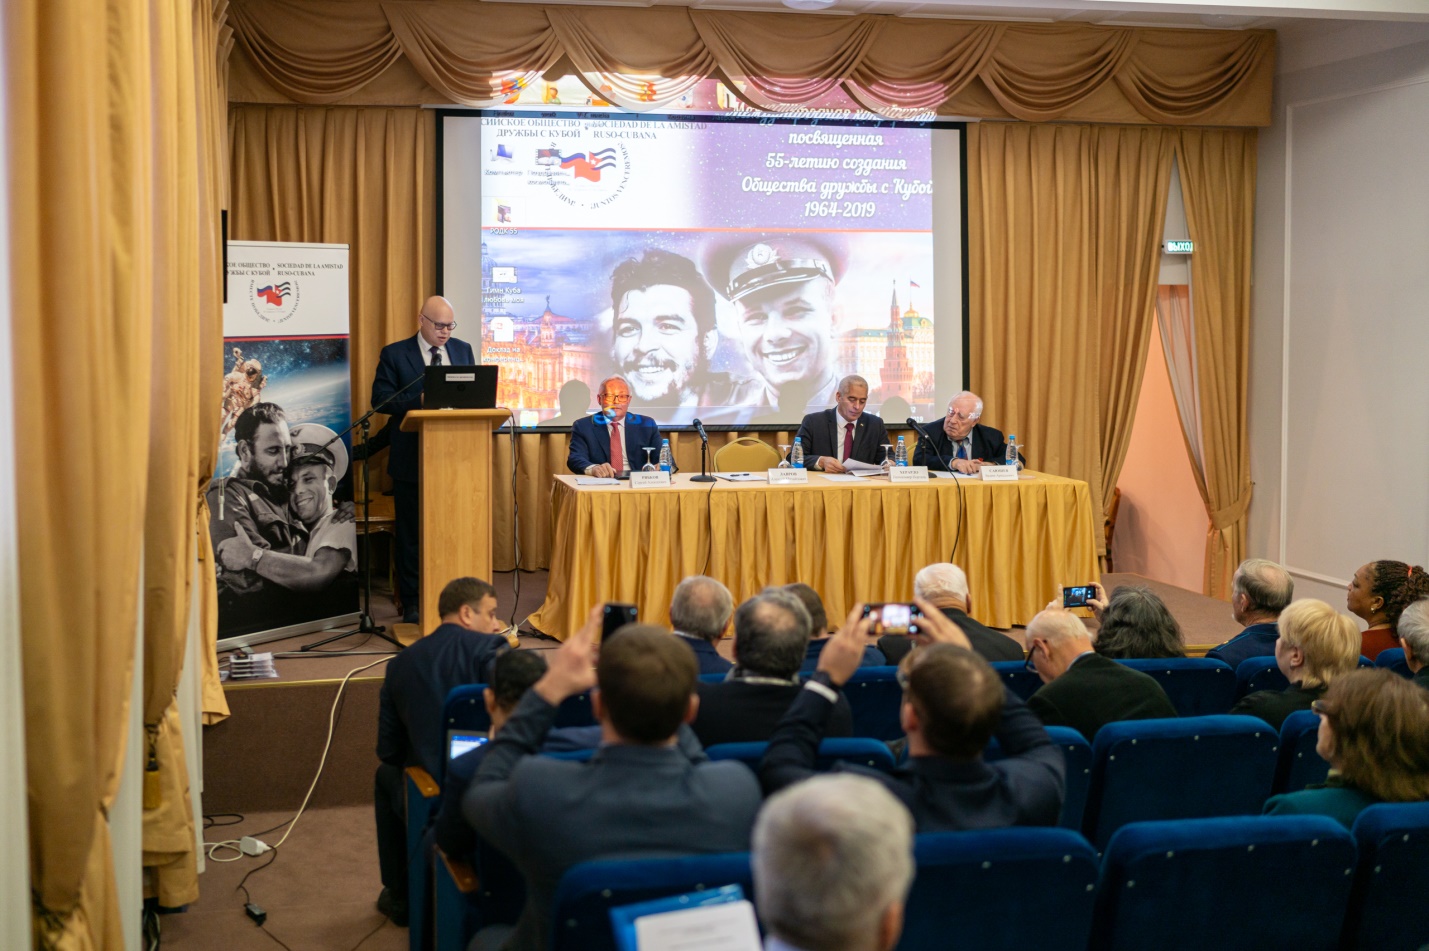 Президент РОДК Алексей Михайлович Лавров открывает конференцию